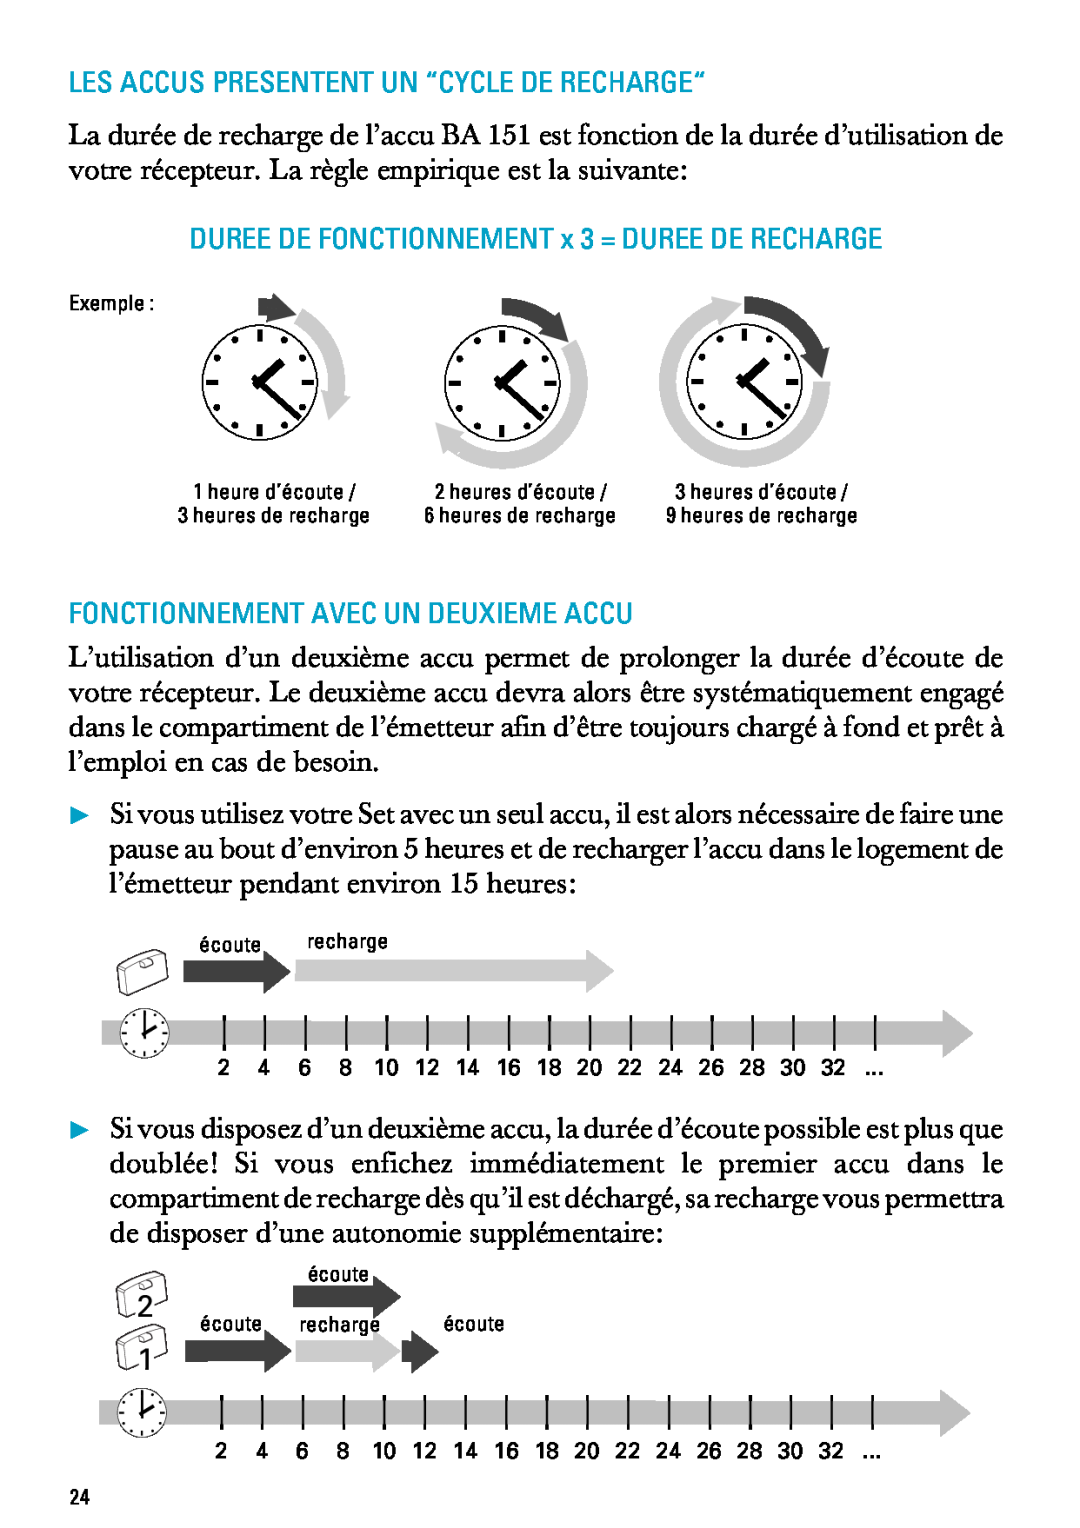 Sennheiser RI 300 Les Accus Presentent Un “Cycle De Recharge“, DUREE DE FONCTIONNEMENT x 3 = DUREE DE RECHARGE, Exemple 